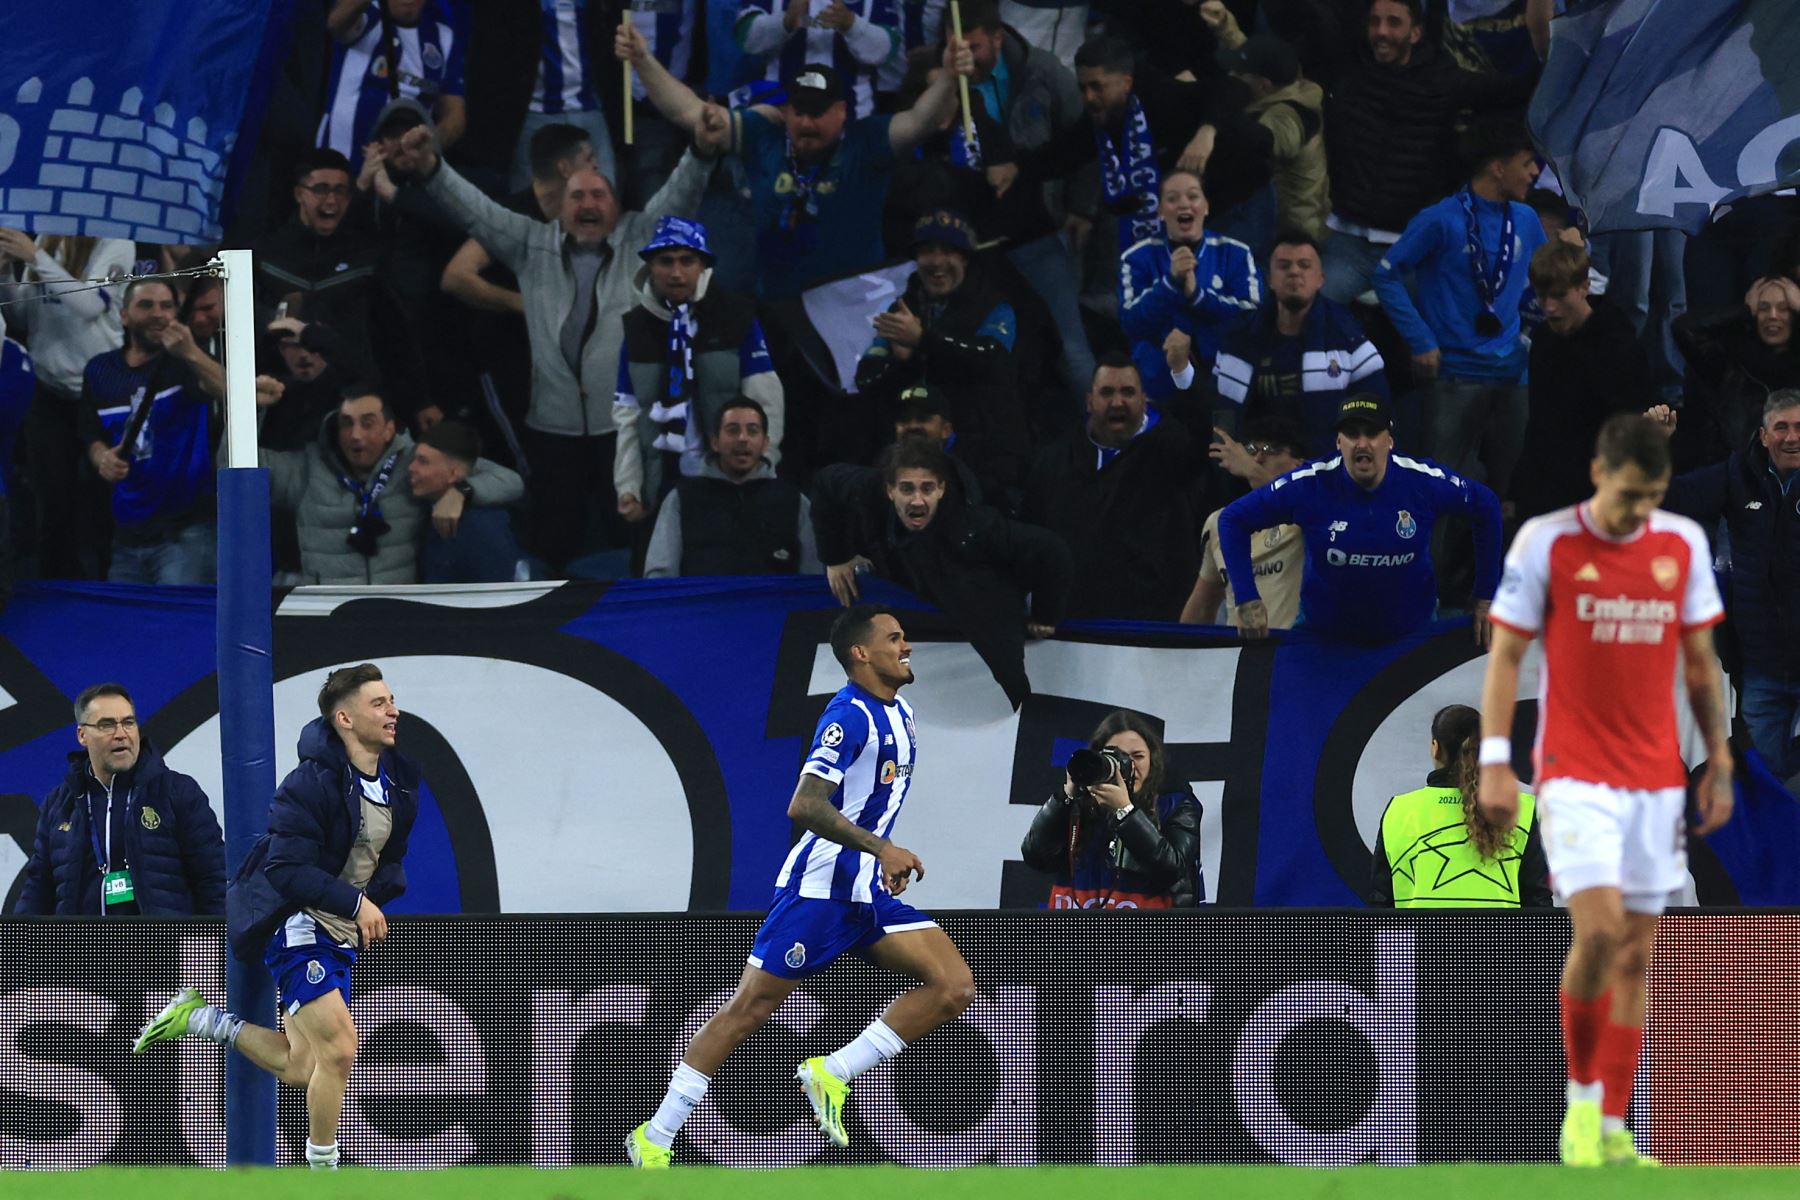 El centrocampista brasileño  del FC Porto, Wenderson Galeno, celebra marcar un gol durante el partido de ida de los octavos de final de la Liga de Campeones de la UEFA entre el FC Porto y el Arsenal FC en el estadio Dragao de Oporto.
Foto: AFP